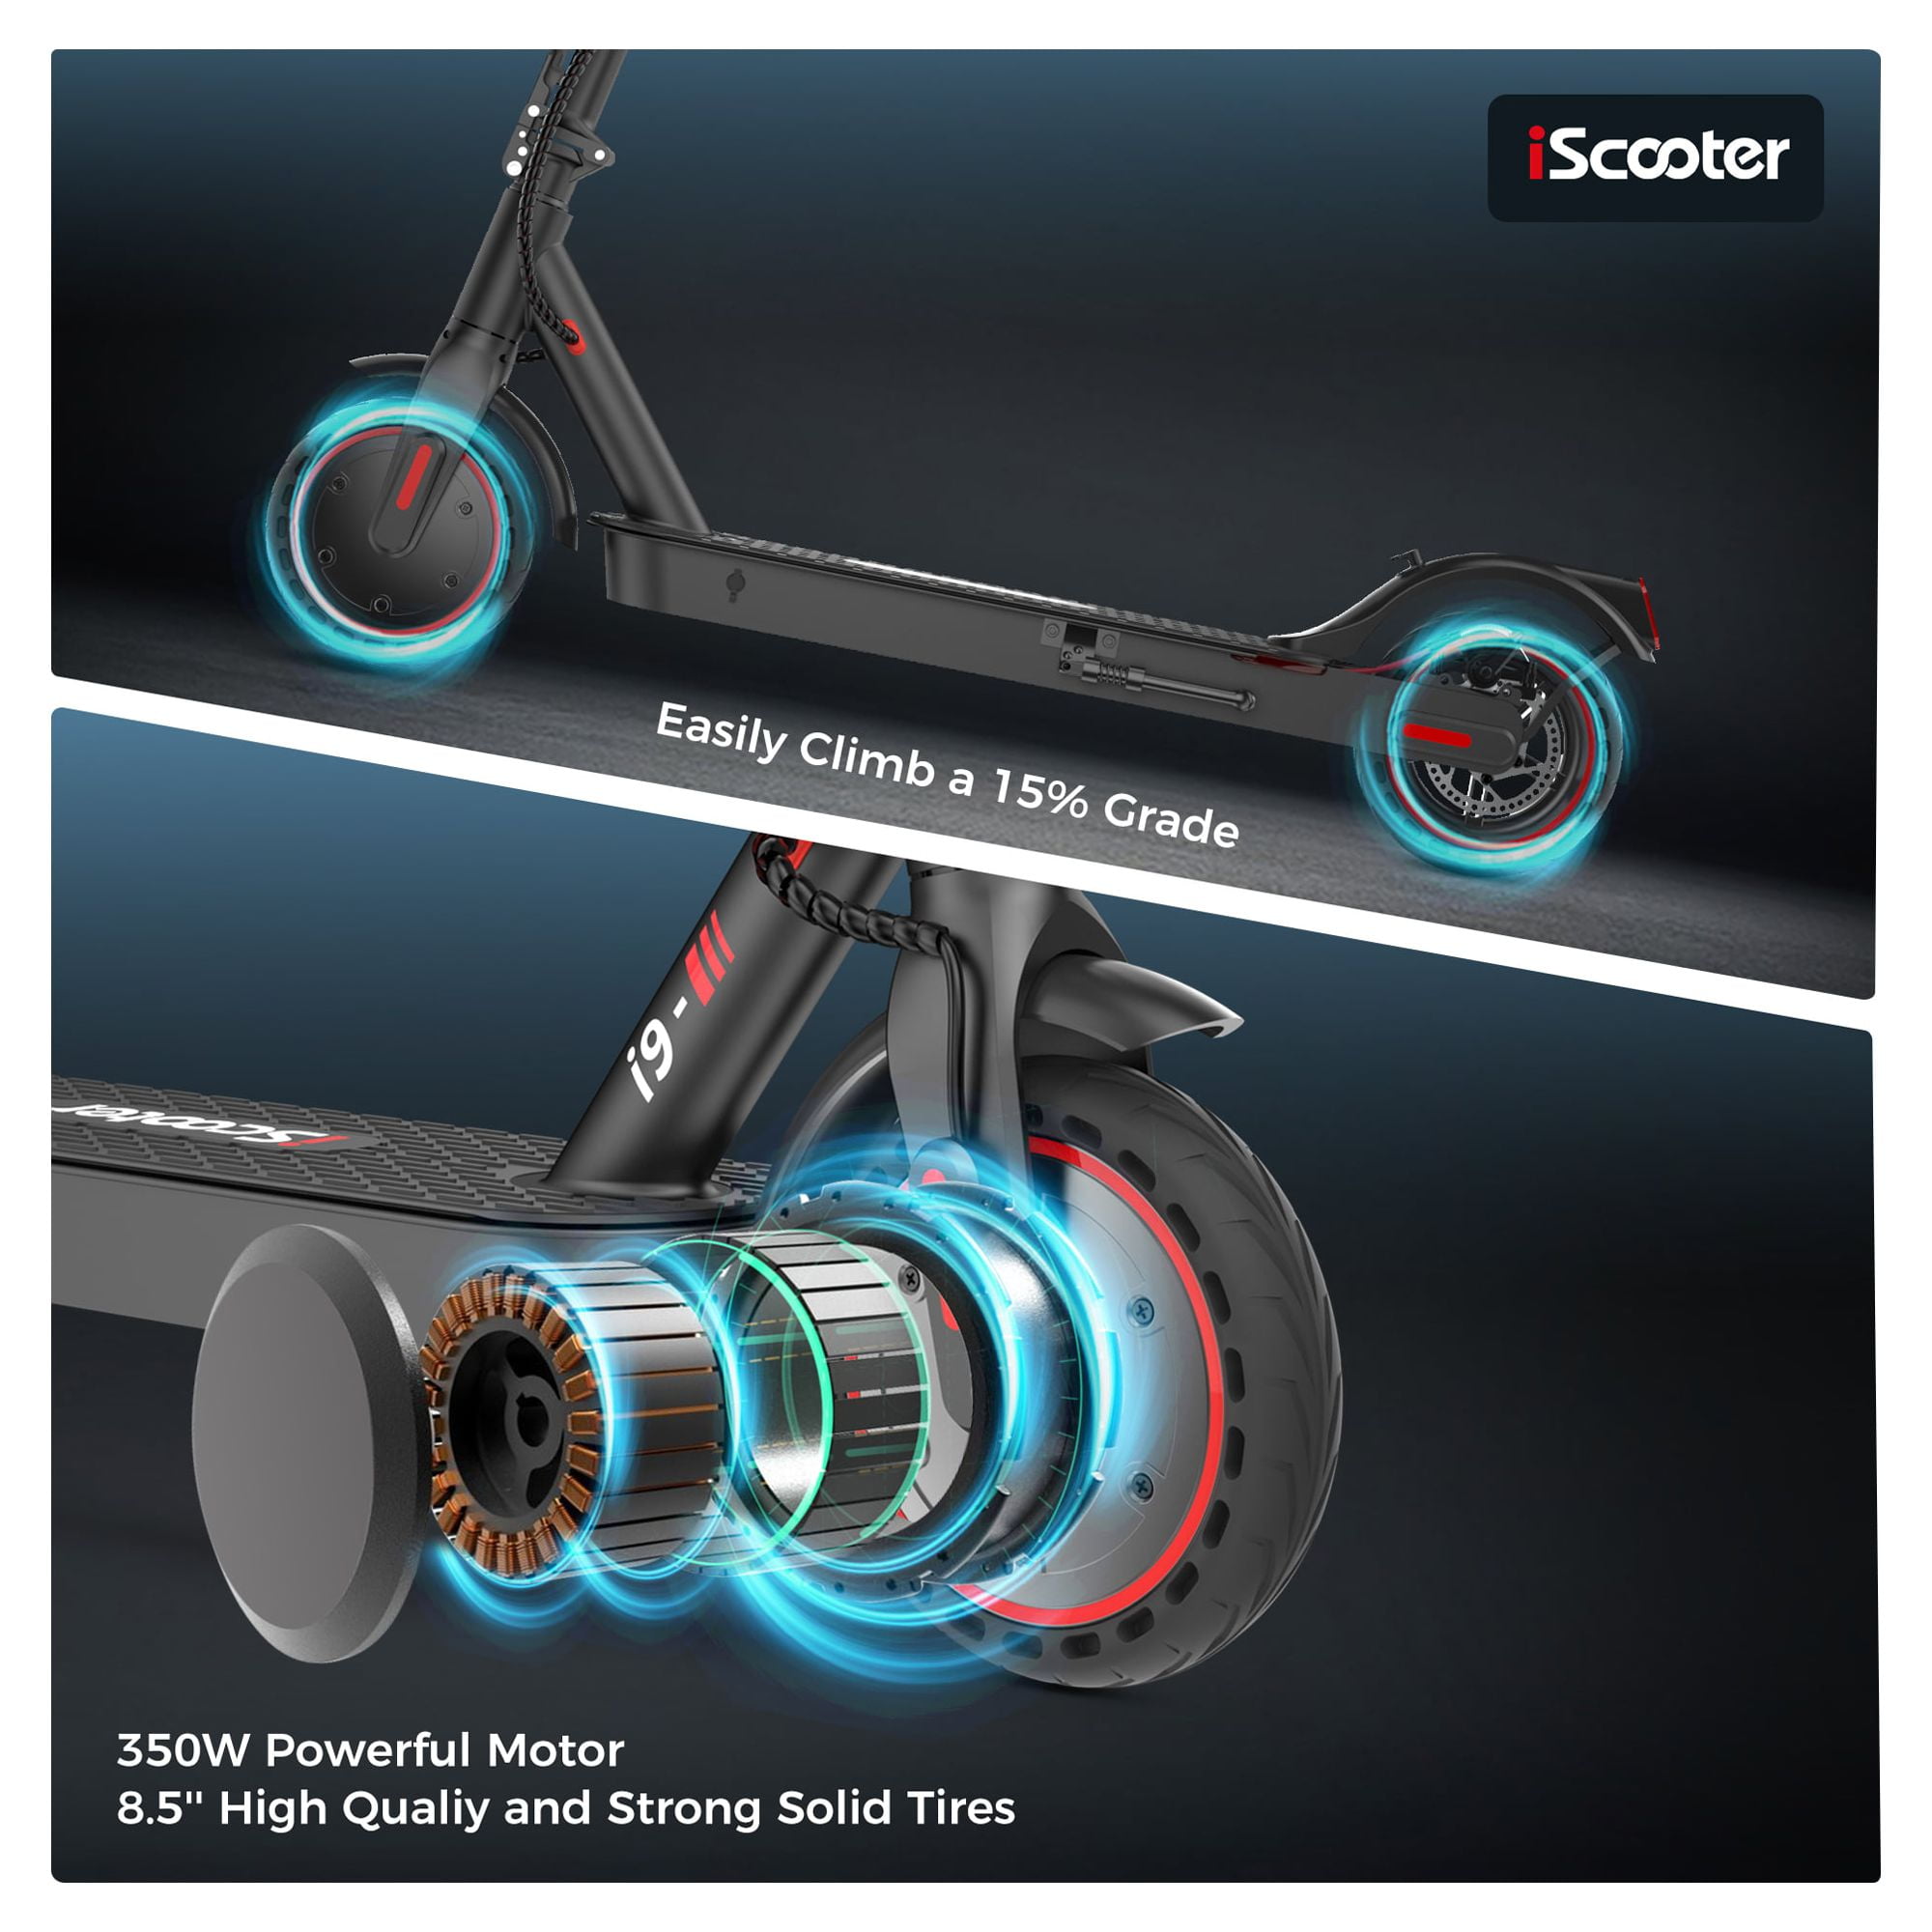 Trottinette Électrique IScooter i9 PRO Pliable Scooter Adulte 350W